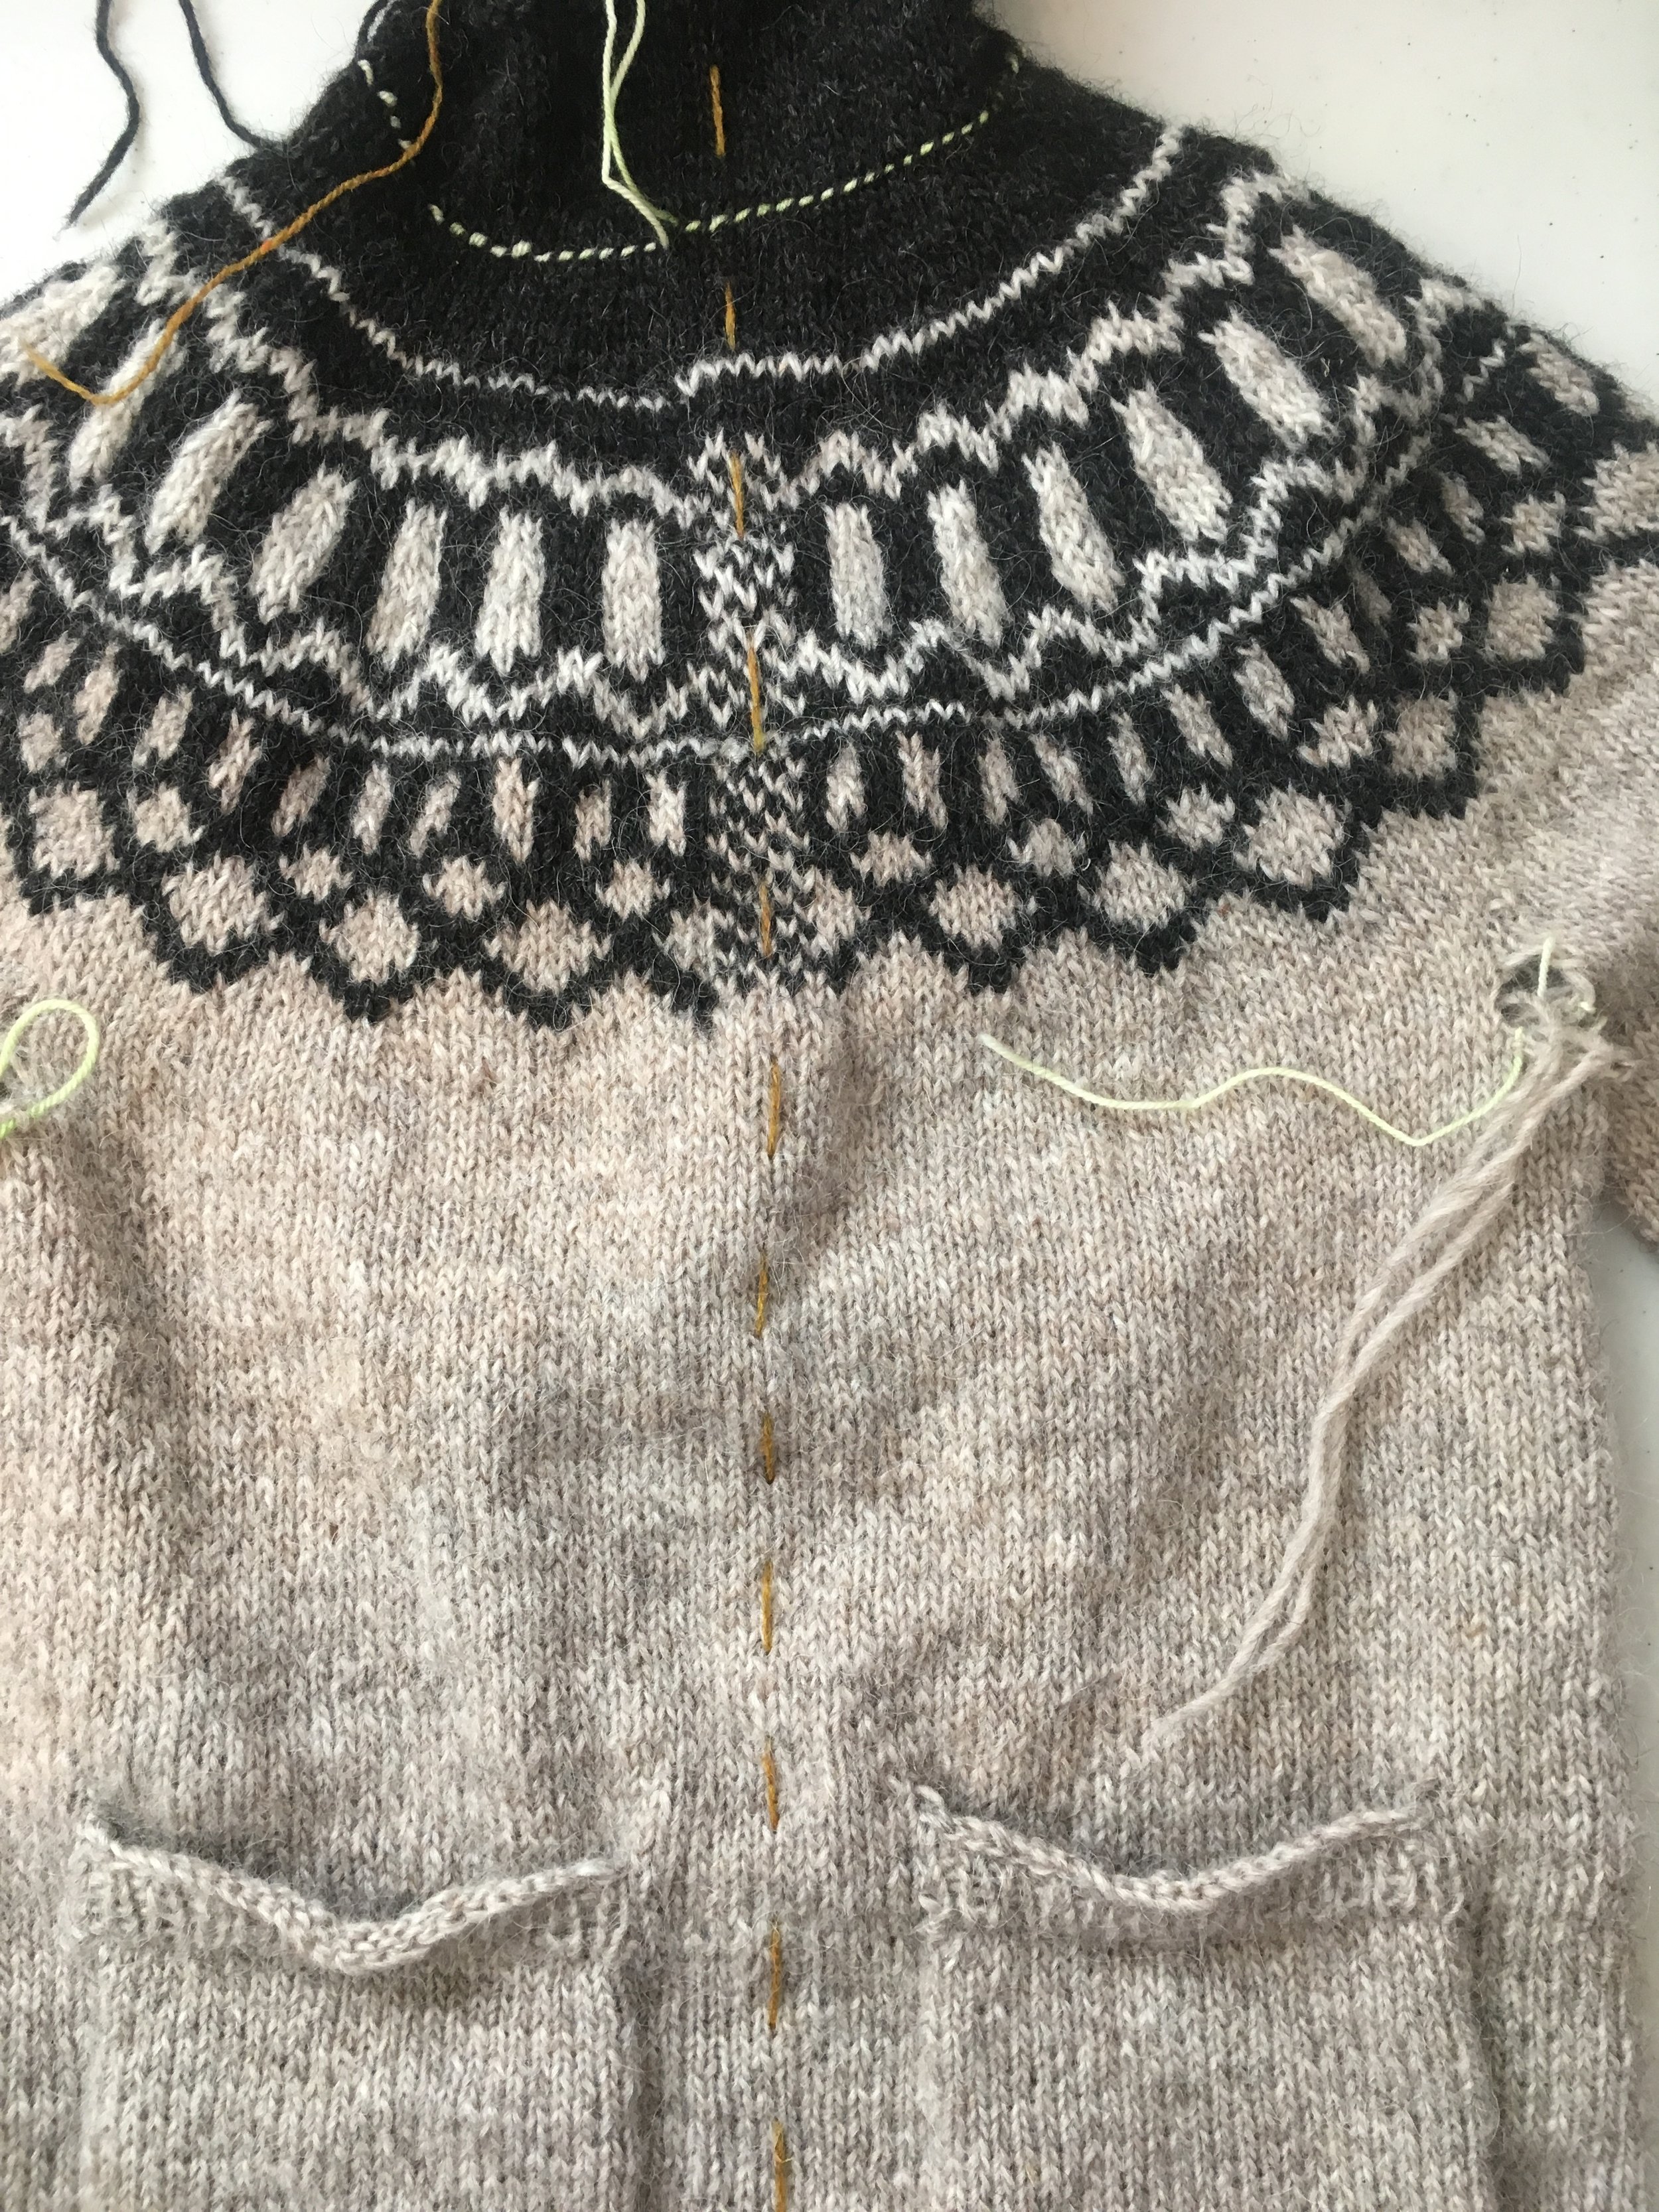 Knitting Tutorials — Andrea Rangel